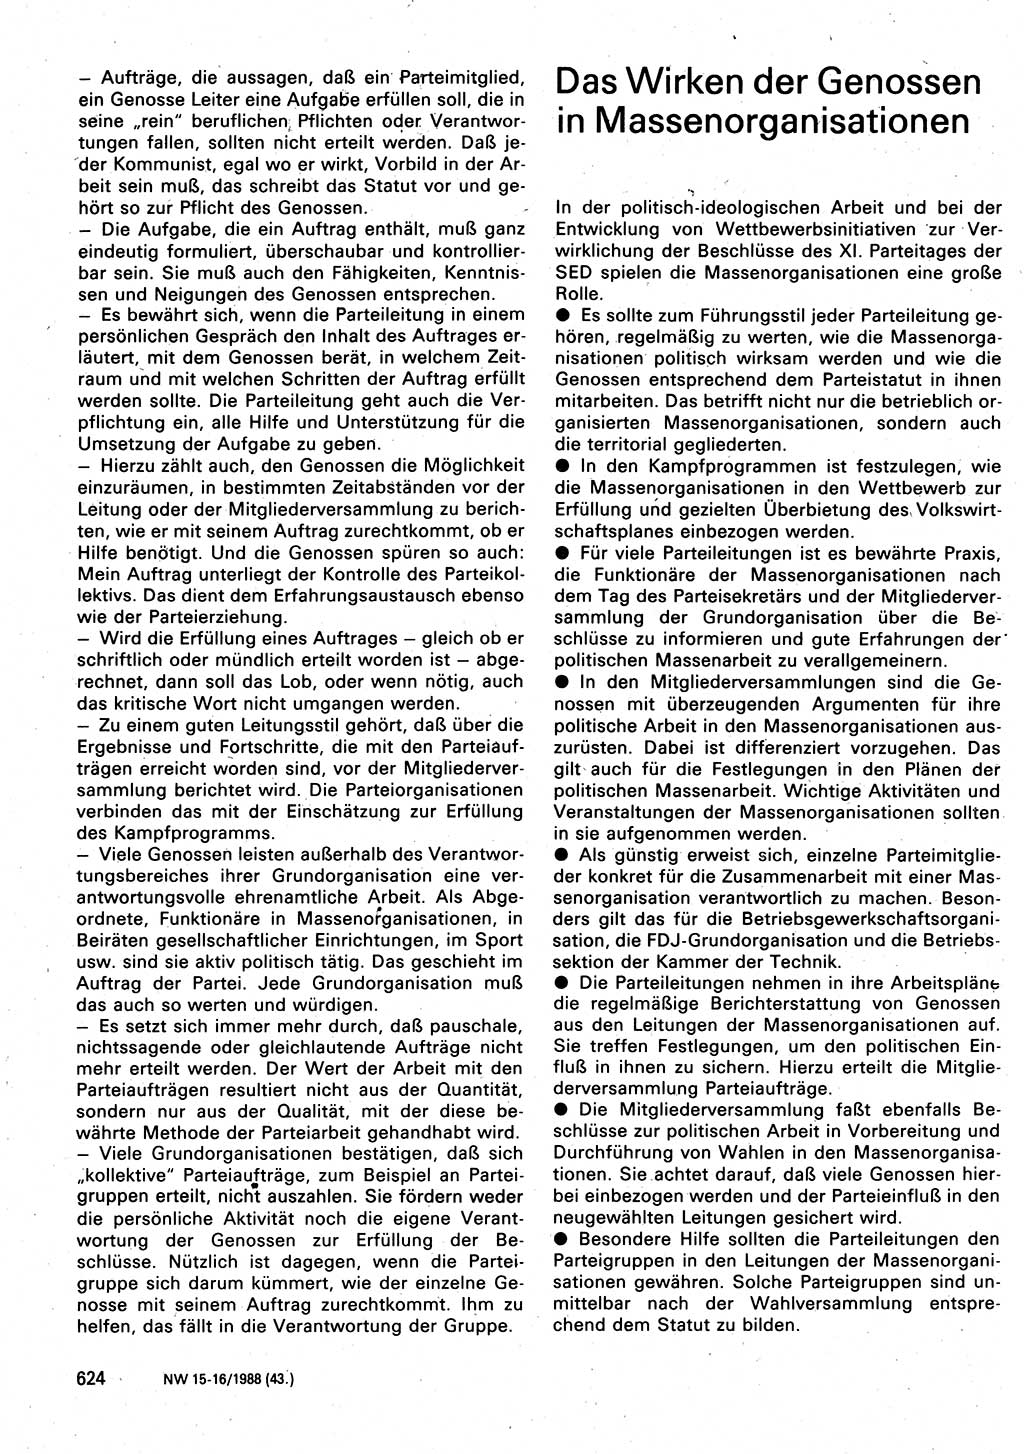 Neuer Weg (NW), Organ des Zentralkomitees (ZK) der SED (Sozialistische Einheitspartei Deutschlands) für Fragen des Parteilebens, 43. Jahrgang [Deutsche Demokratische Republik (DDR)] 1988, Seite 624 (NW ZK SED DDR 1988, S. 624)